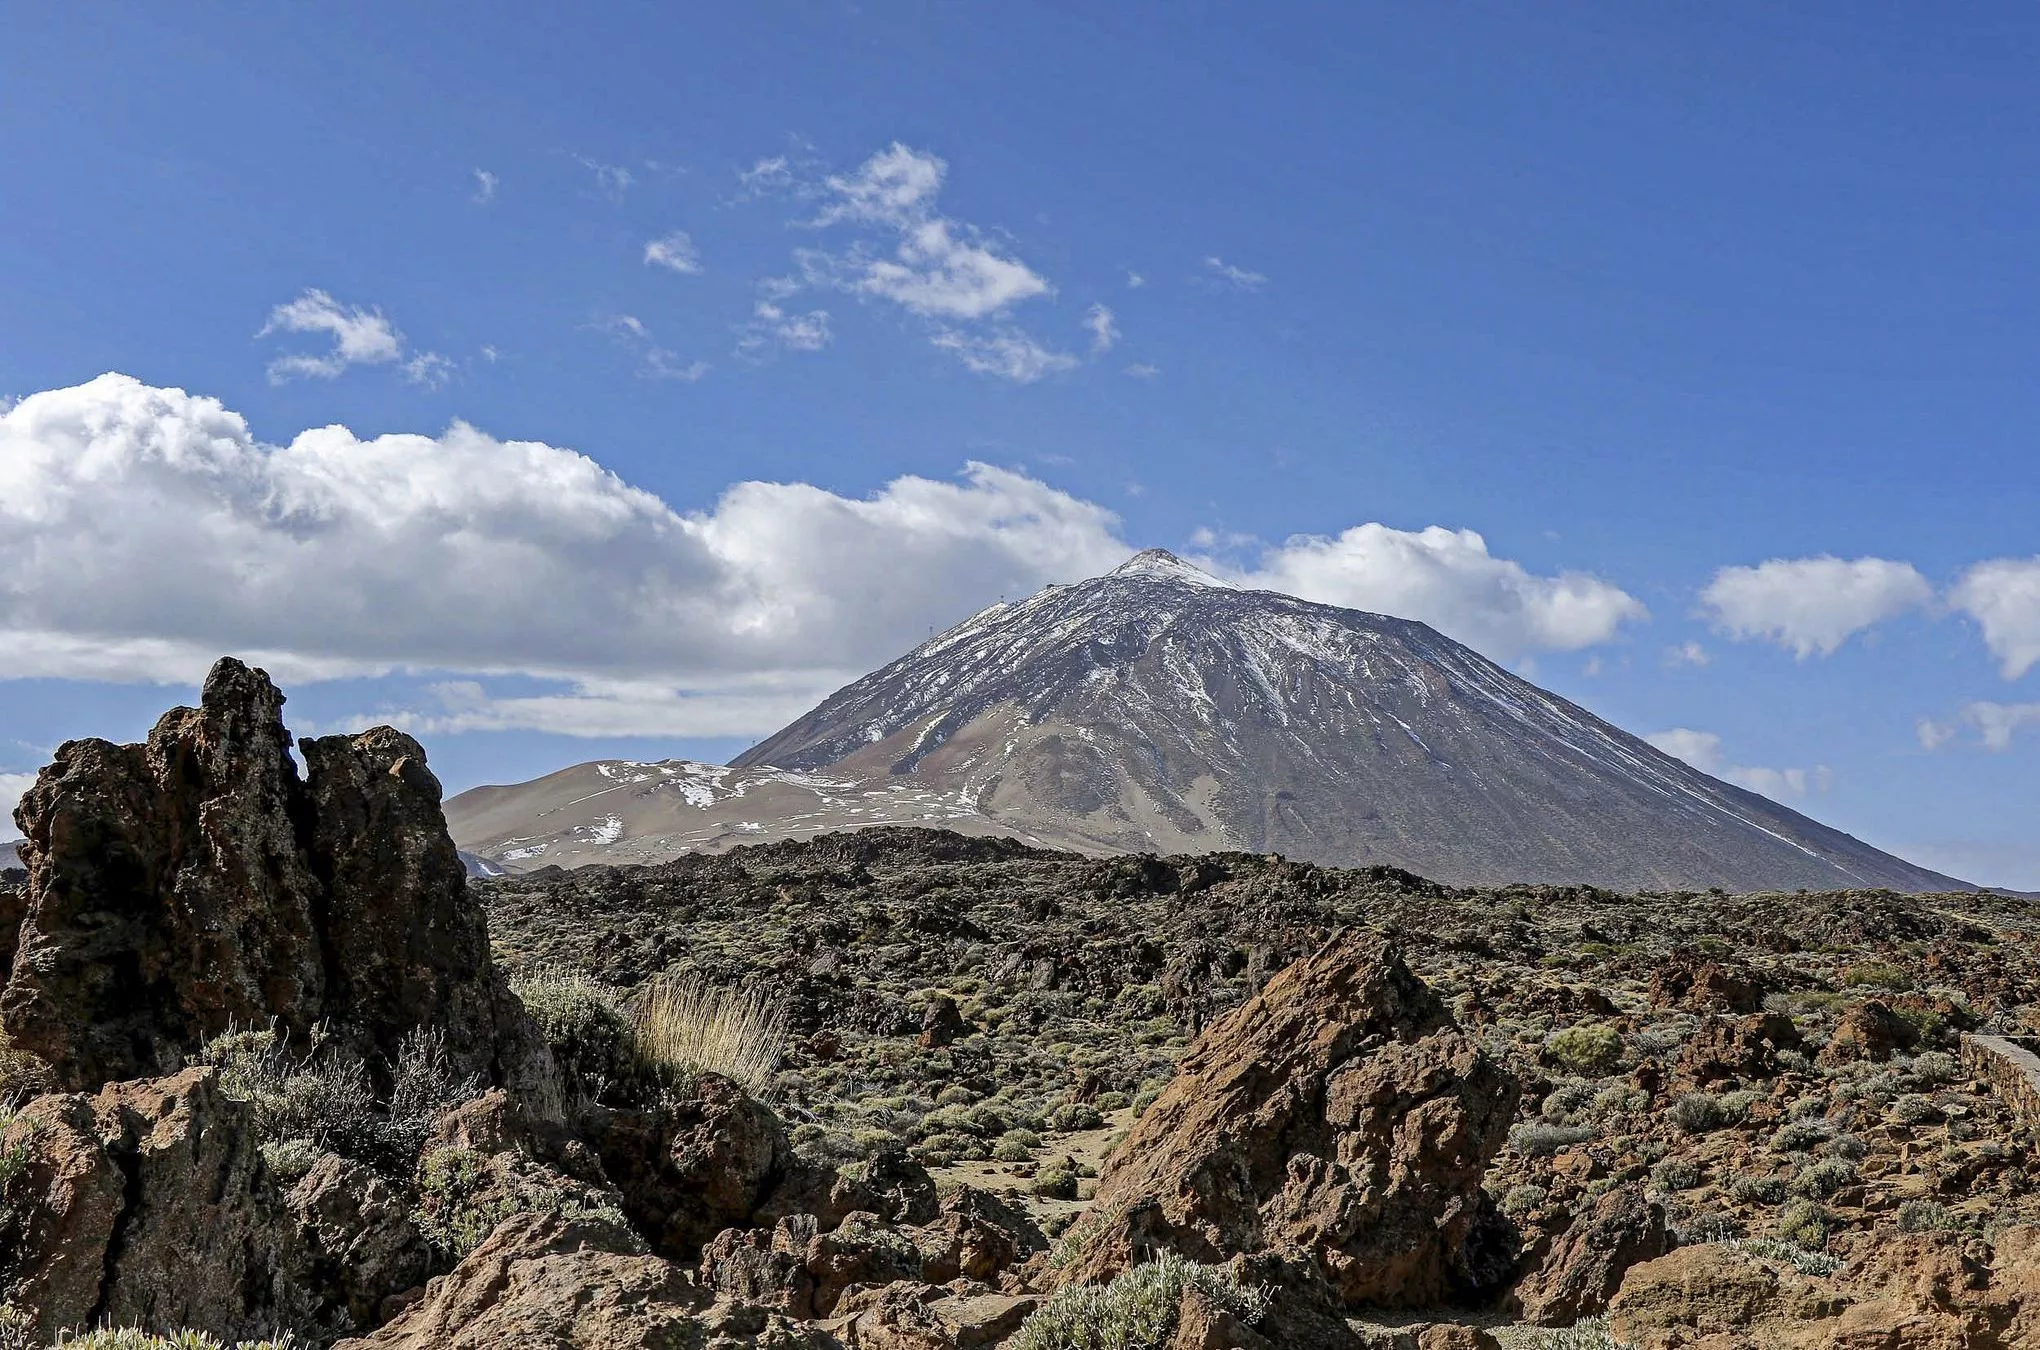 Inmitten einer einzigartigen Vulkanlandschaften erhebt sich der Teide, Spaniens höchster Gipfel